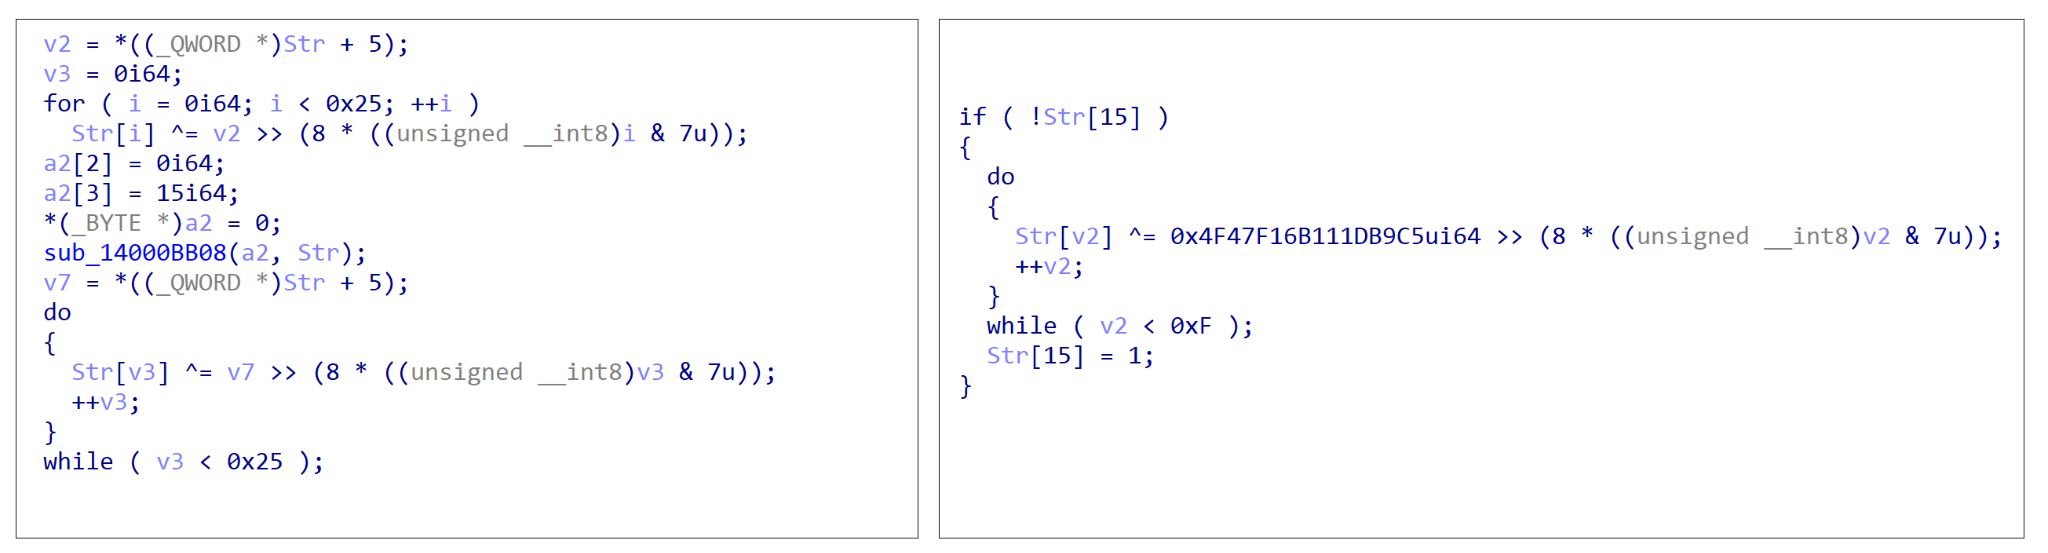 画像 9 は、コードの 2 つのスクリーンショットです。左と右に表示されています。左枠内のコードは、1 つめの文字列復号関数型です。右枠内のコードは 2 つめの文字列復号関数型です。